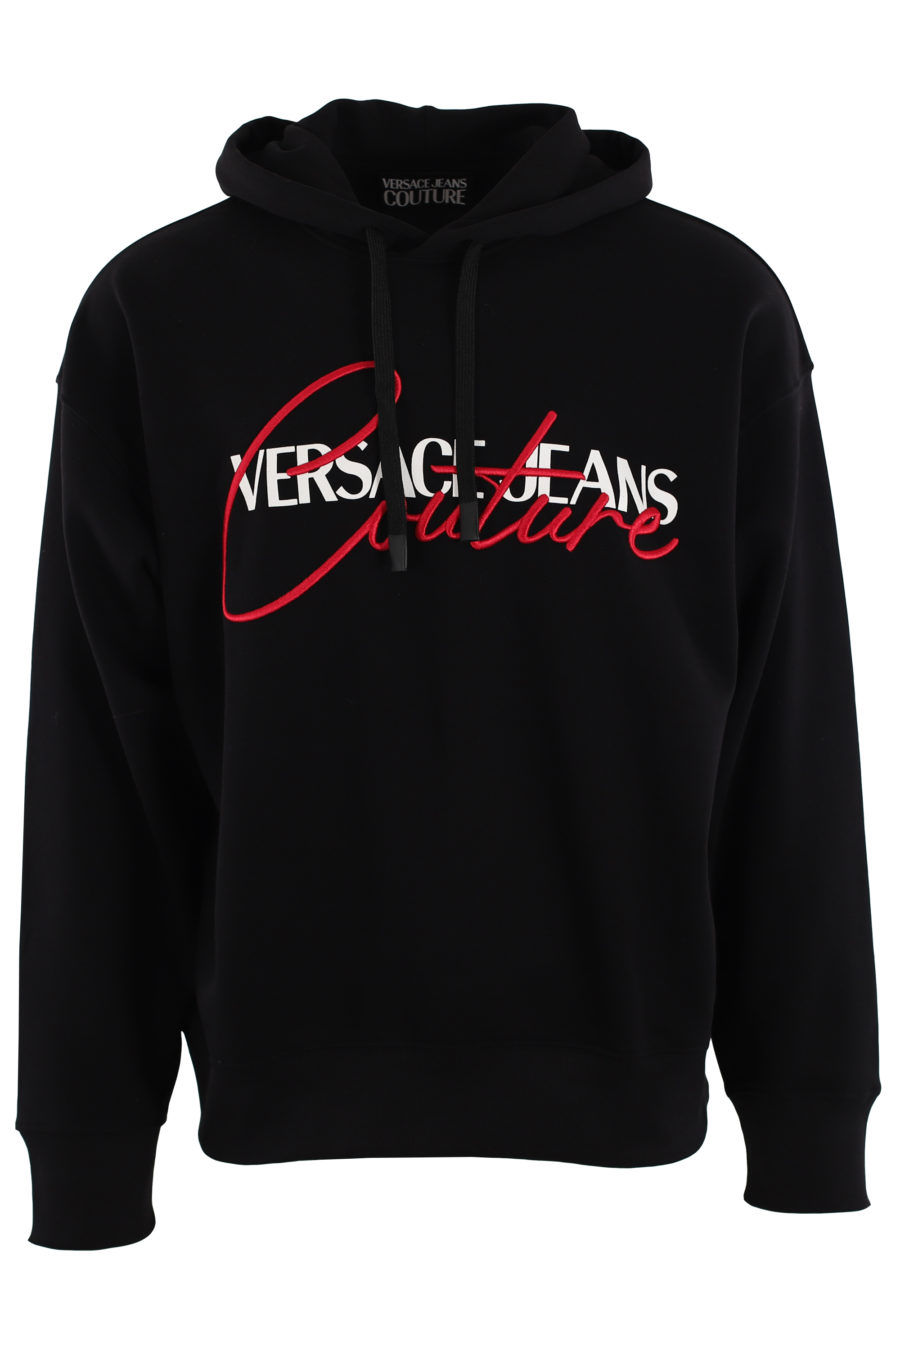 Schwarzes Kapuzensweatshirt mit weißem und rotem gesticktem Logo - IMG 0461